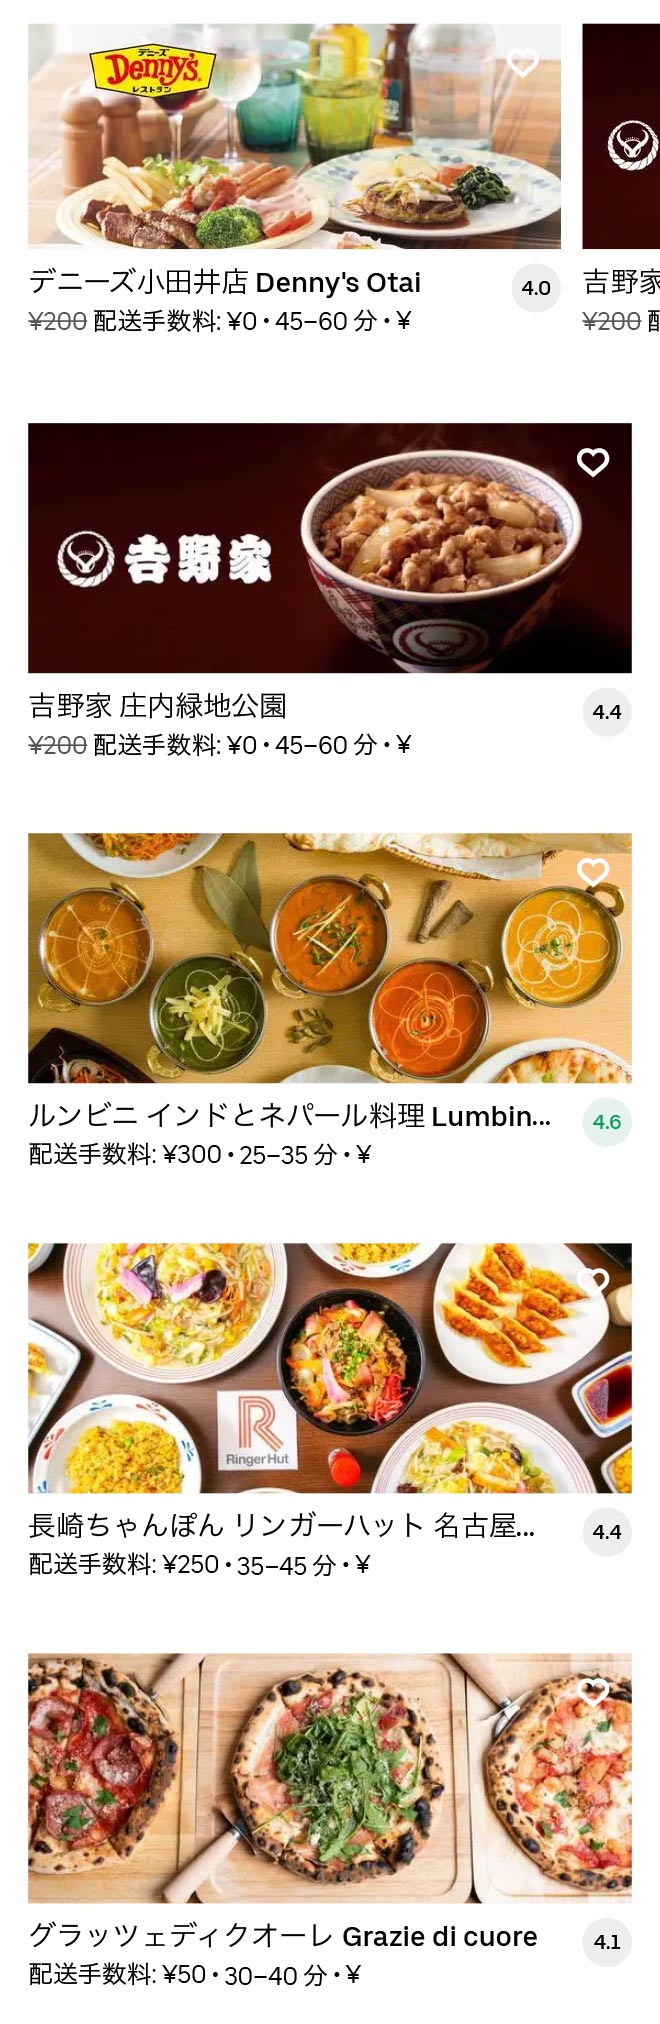 Hoshinomiya menu 2010 02